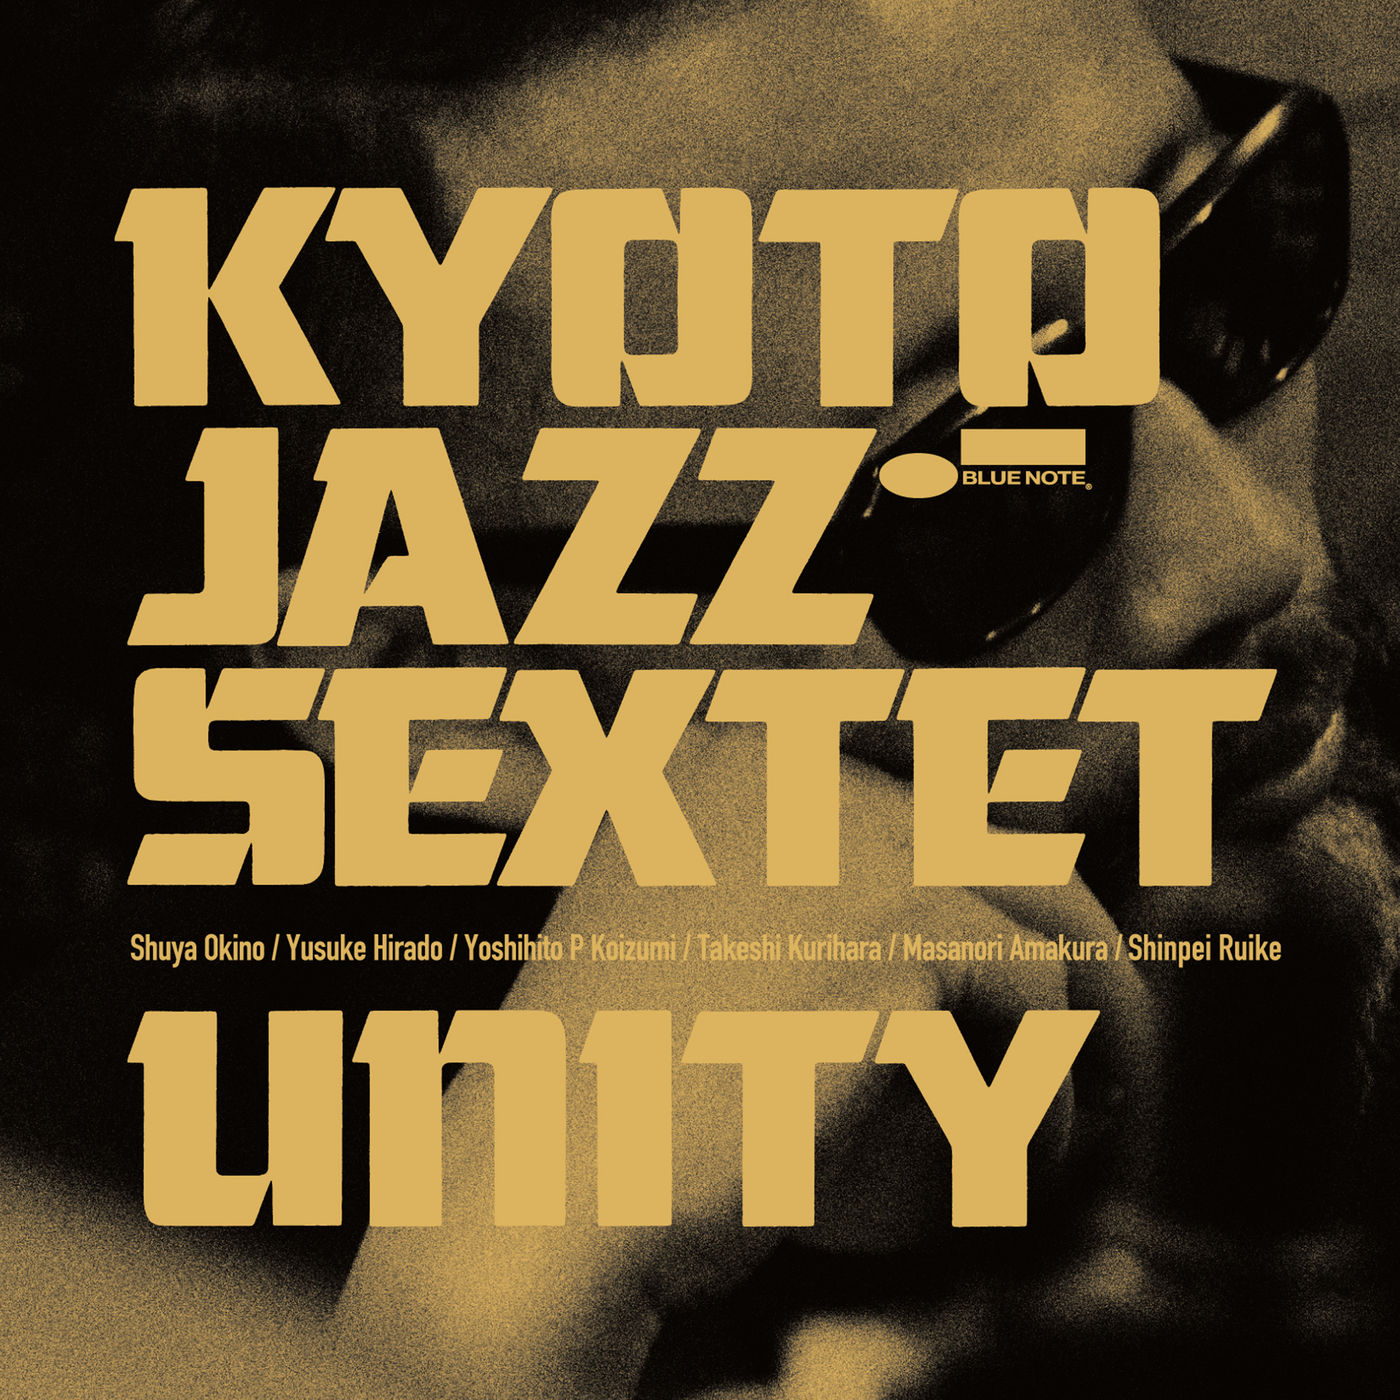 Kyoto Jazz Sextet - Unity (2017) [Qobuz FLAC 24bit/96kHz]